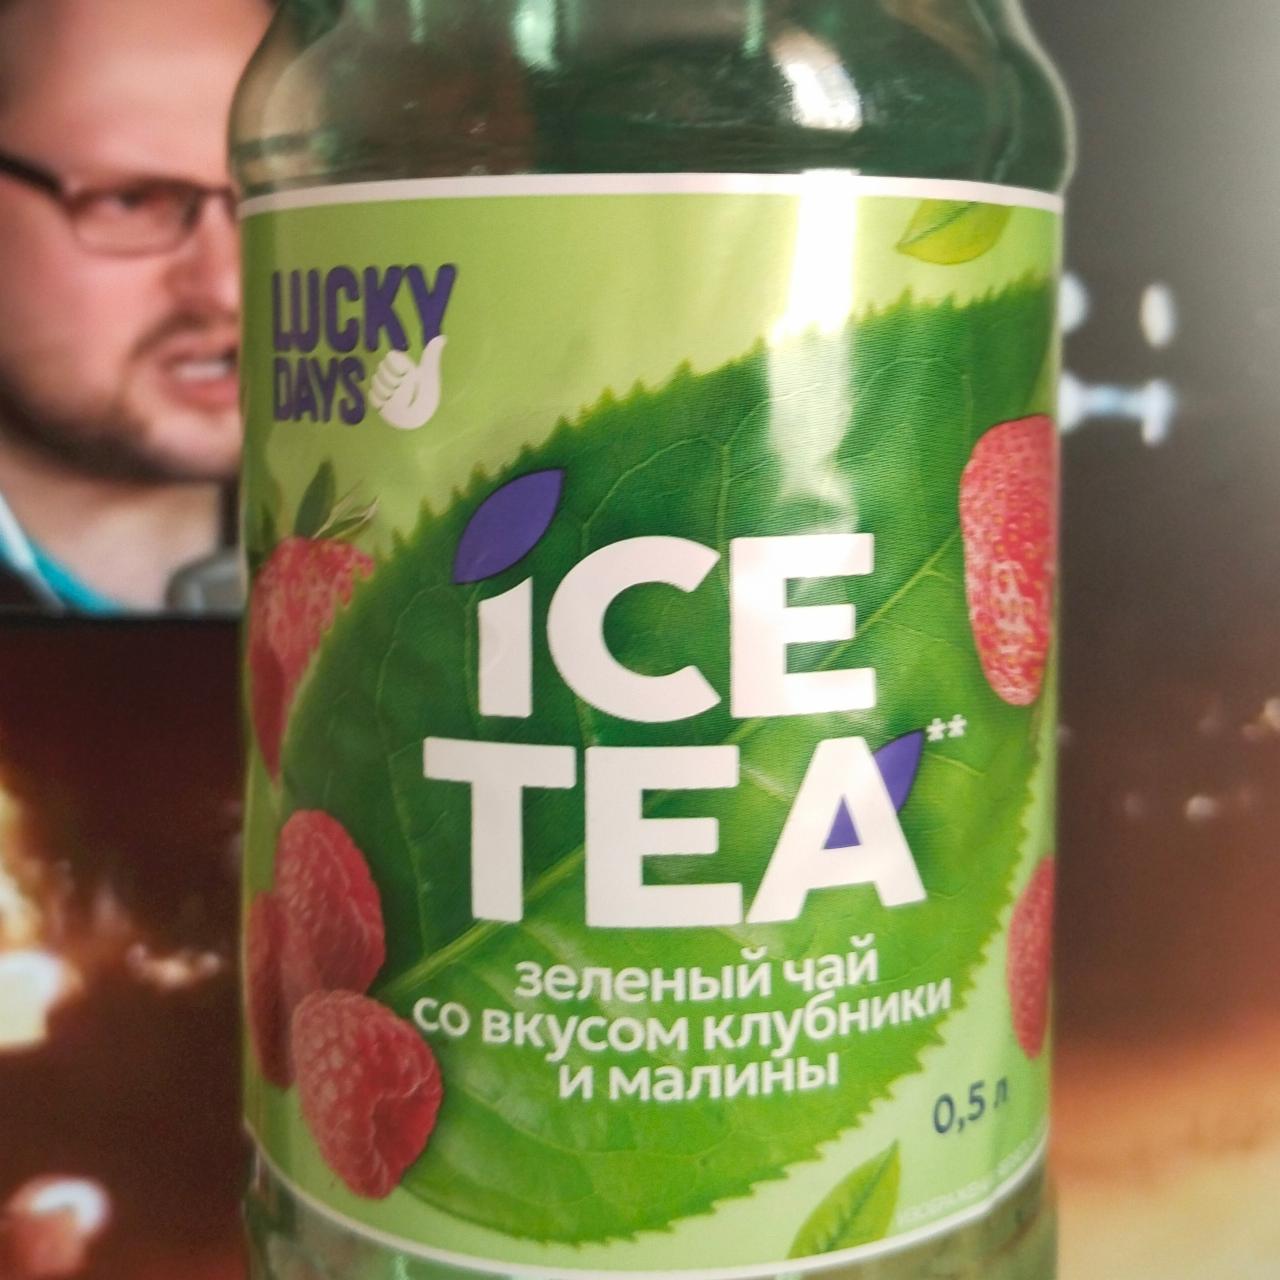 Фото - . ICE TEA. Зелёный чай со вкусом клубники и малины 500мл Lucky Days